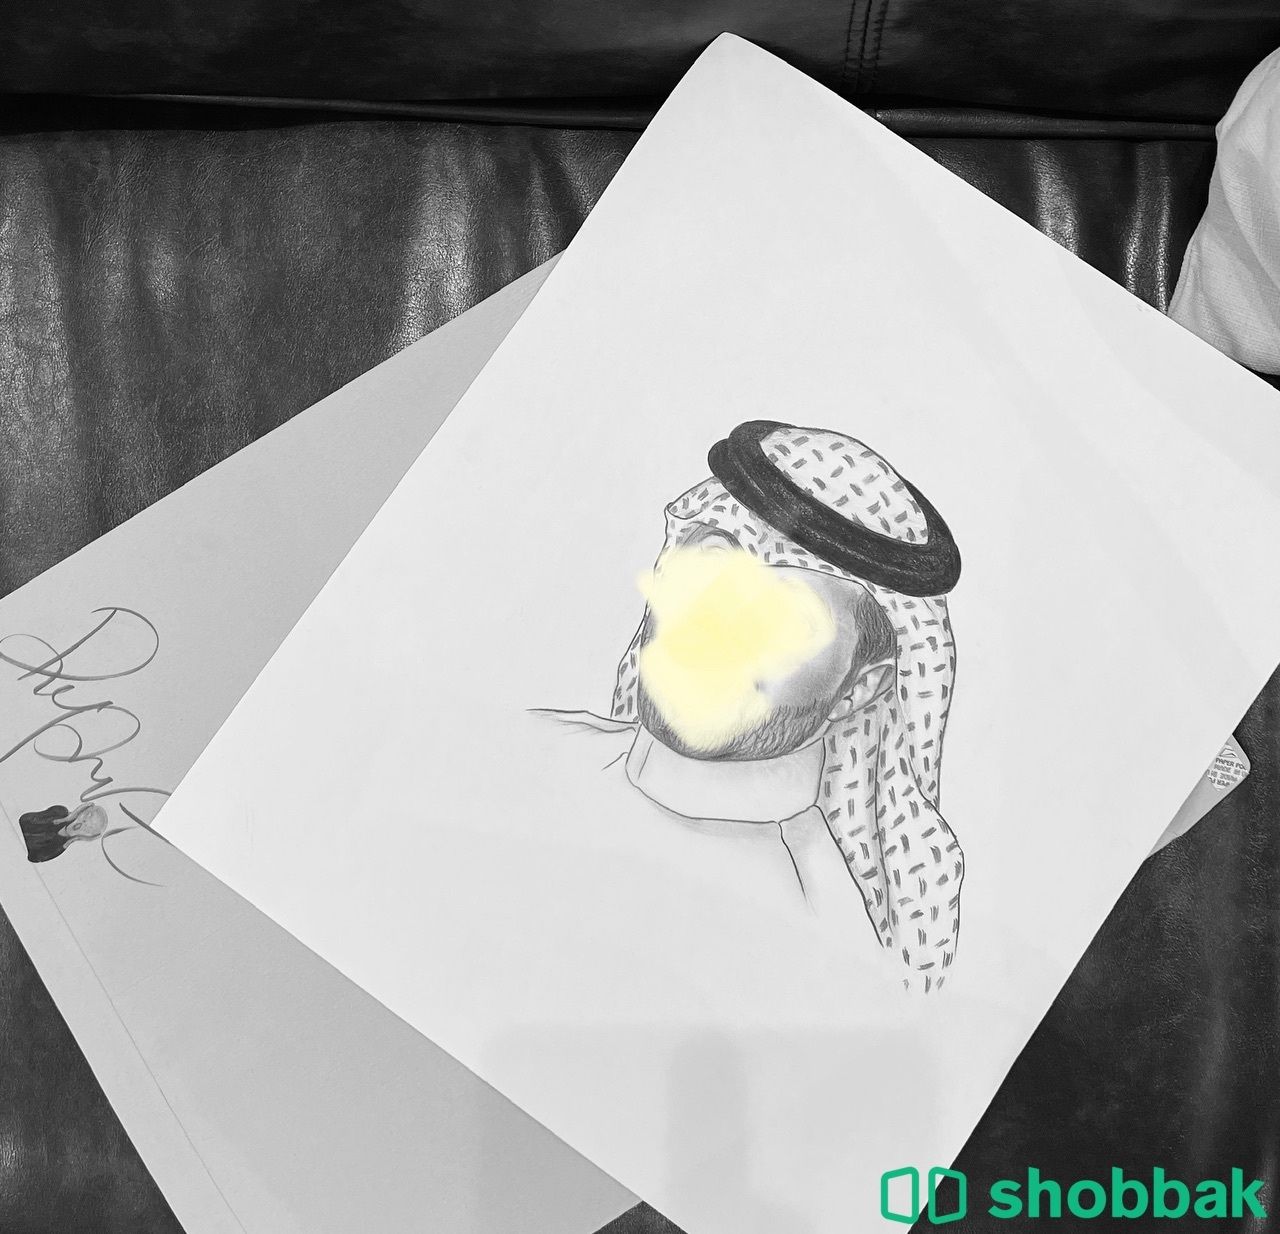 رسم حسب الطلب  Shobbak Saudi Arabia